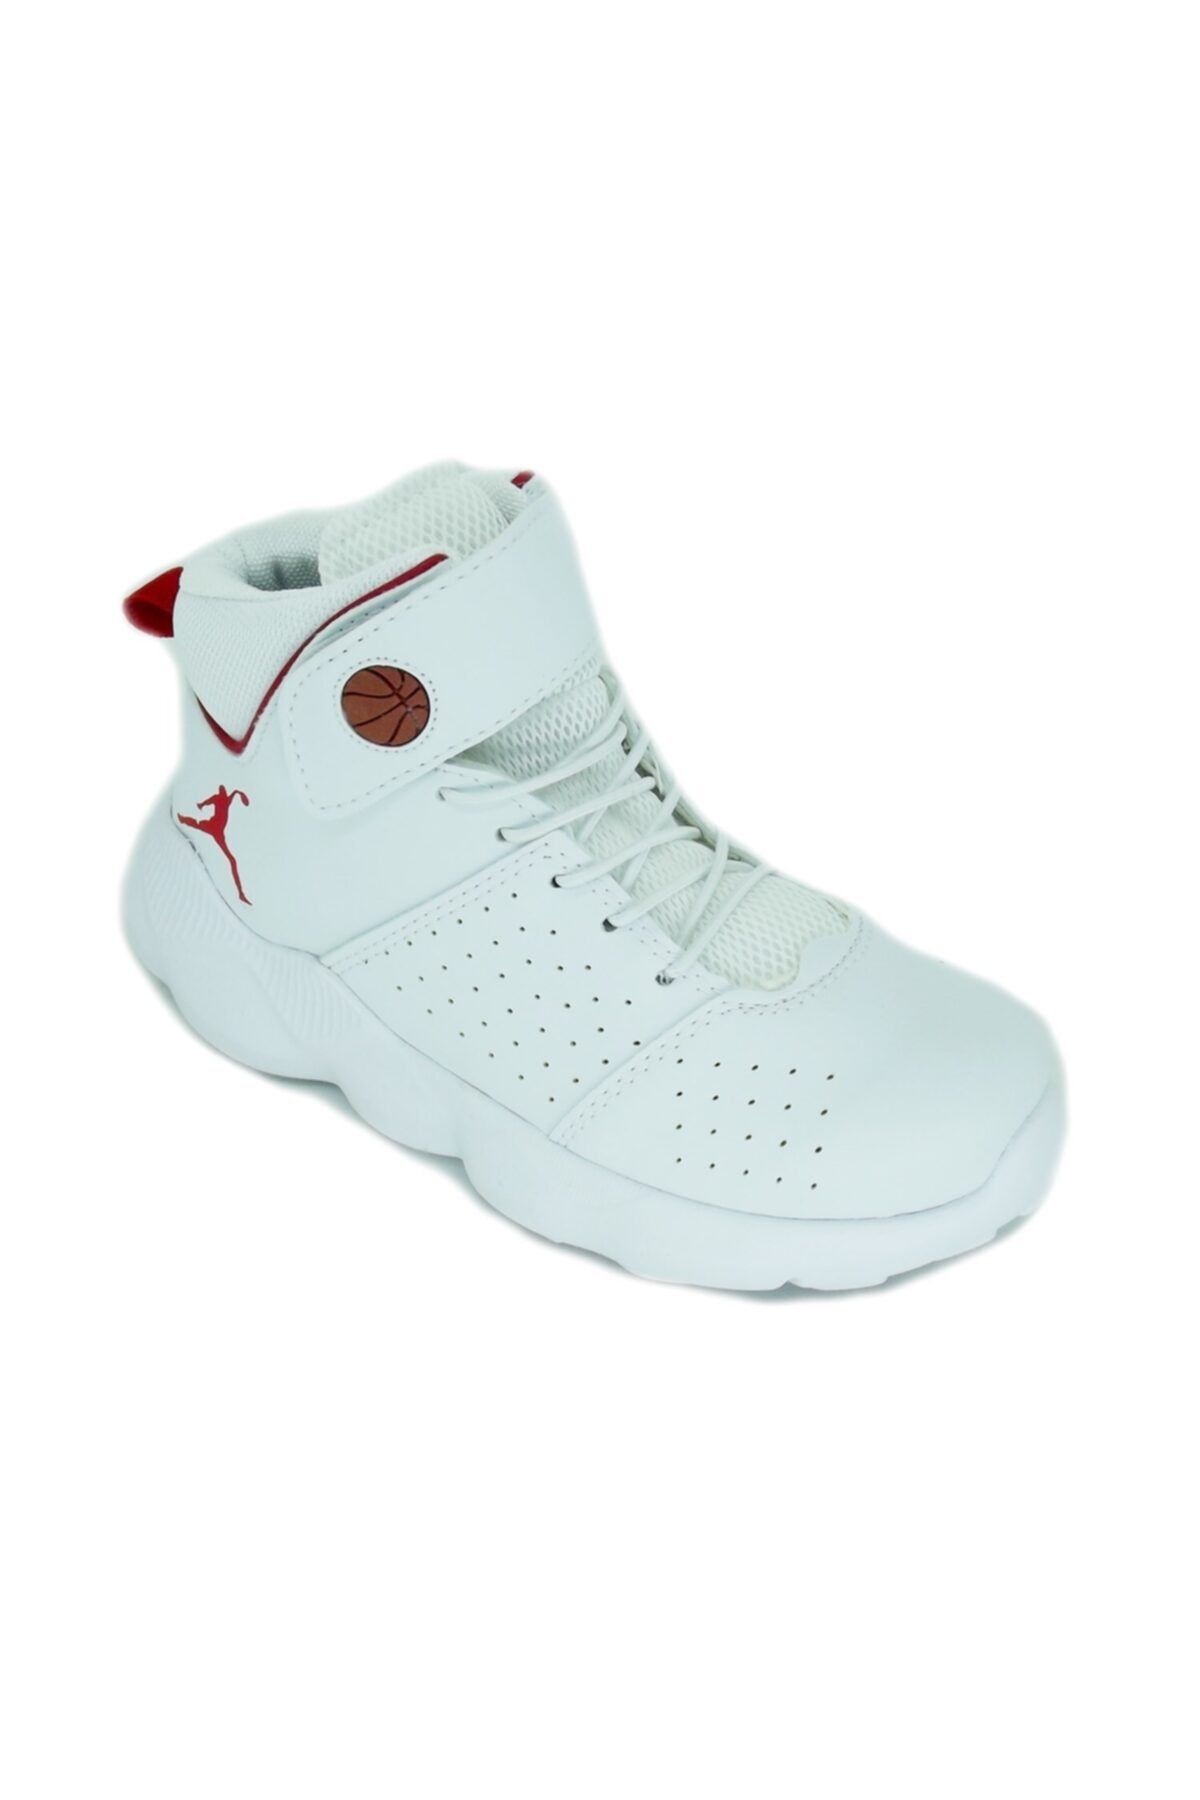 TRENDY Erkek Çocuk Beyaz Basketbol Ayakkabısı 10010018 Cool K-31